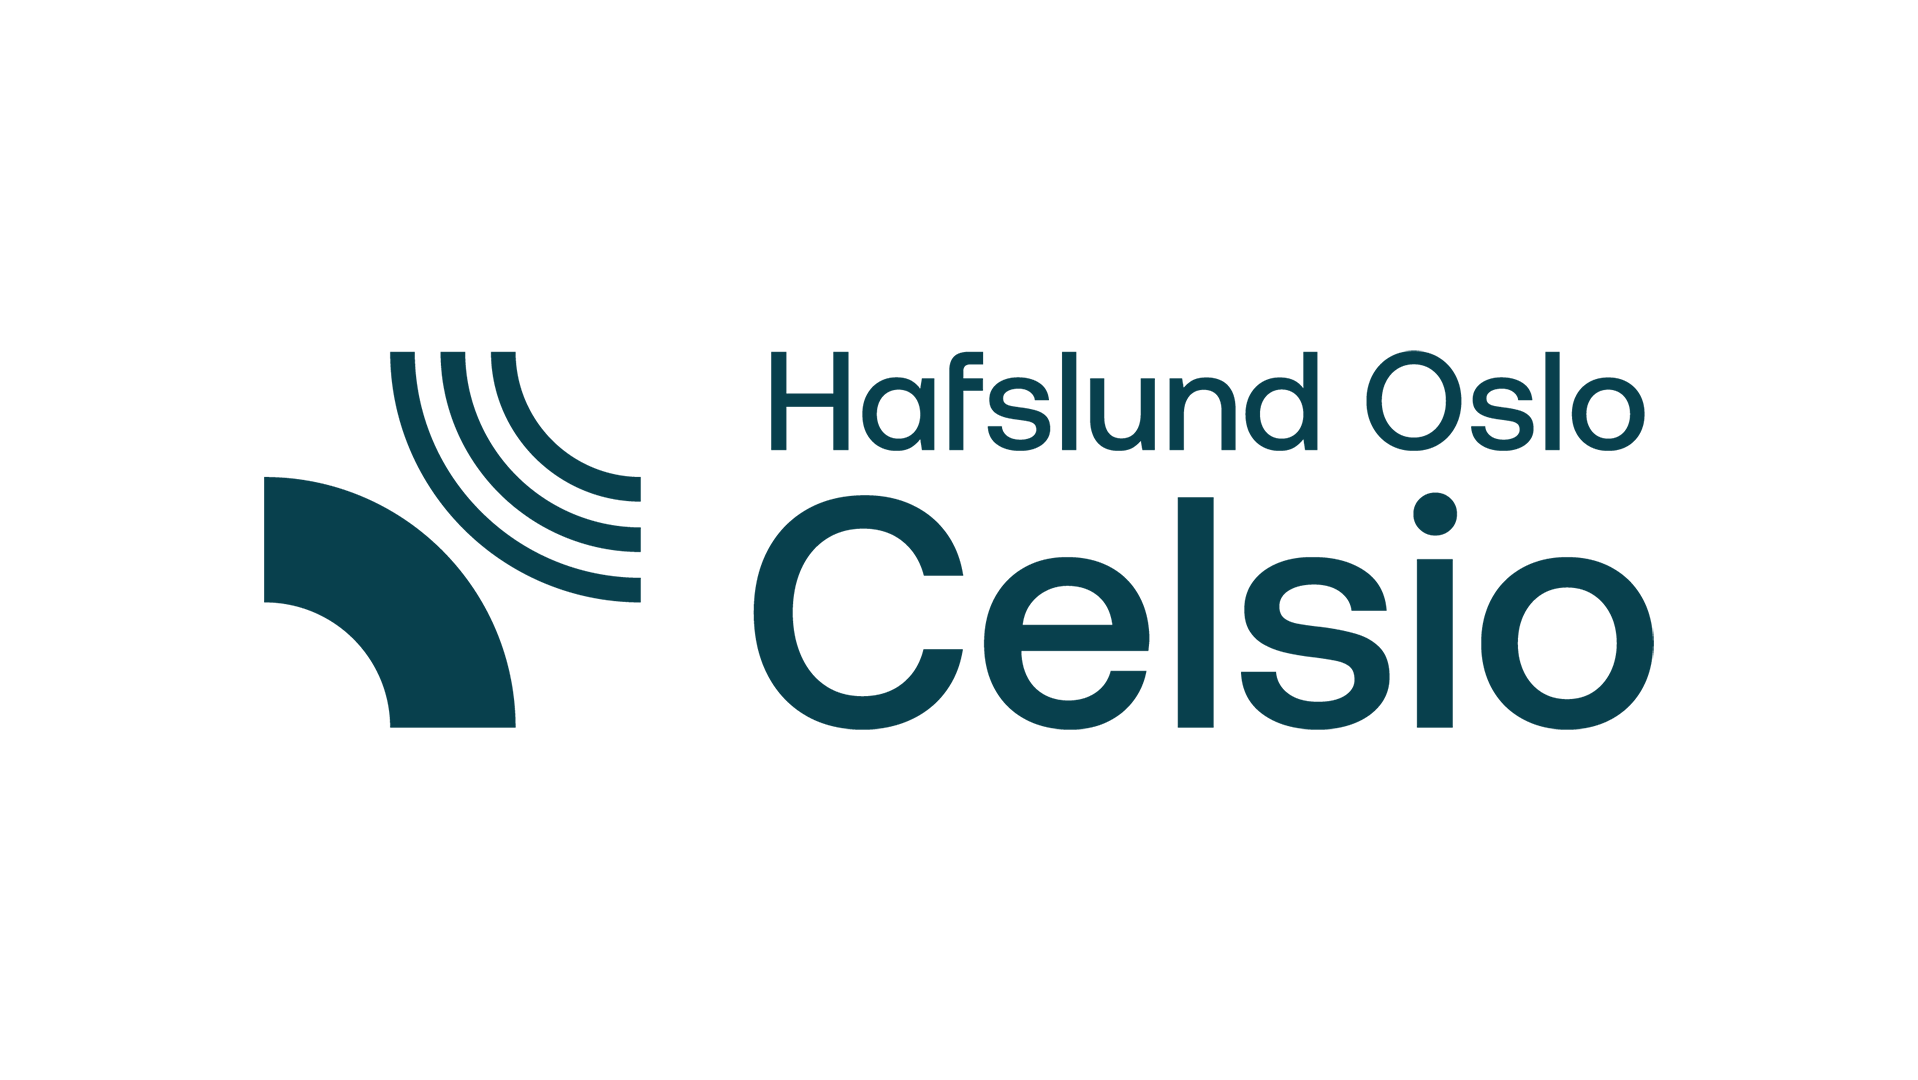 1920x1080_hafslund oslo celsio logo